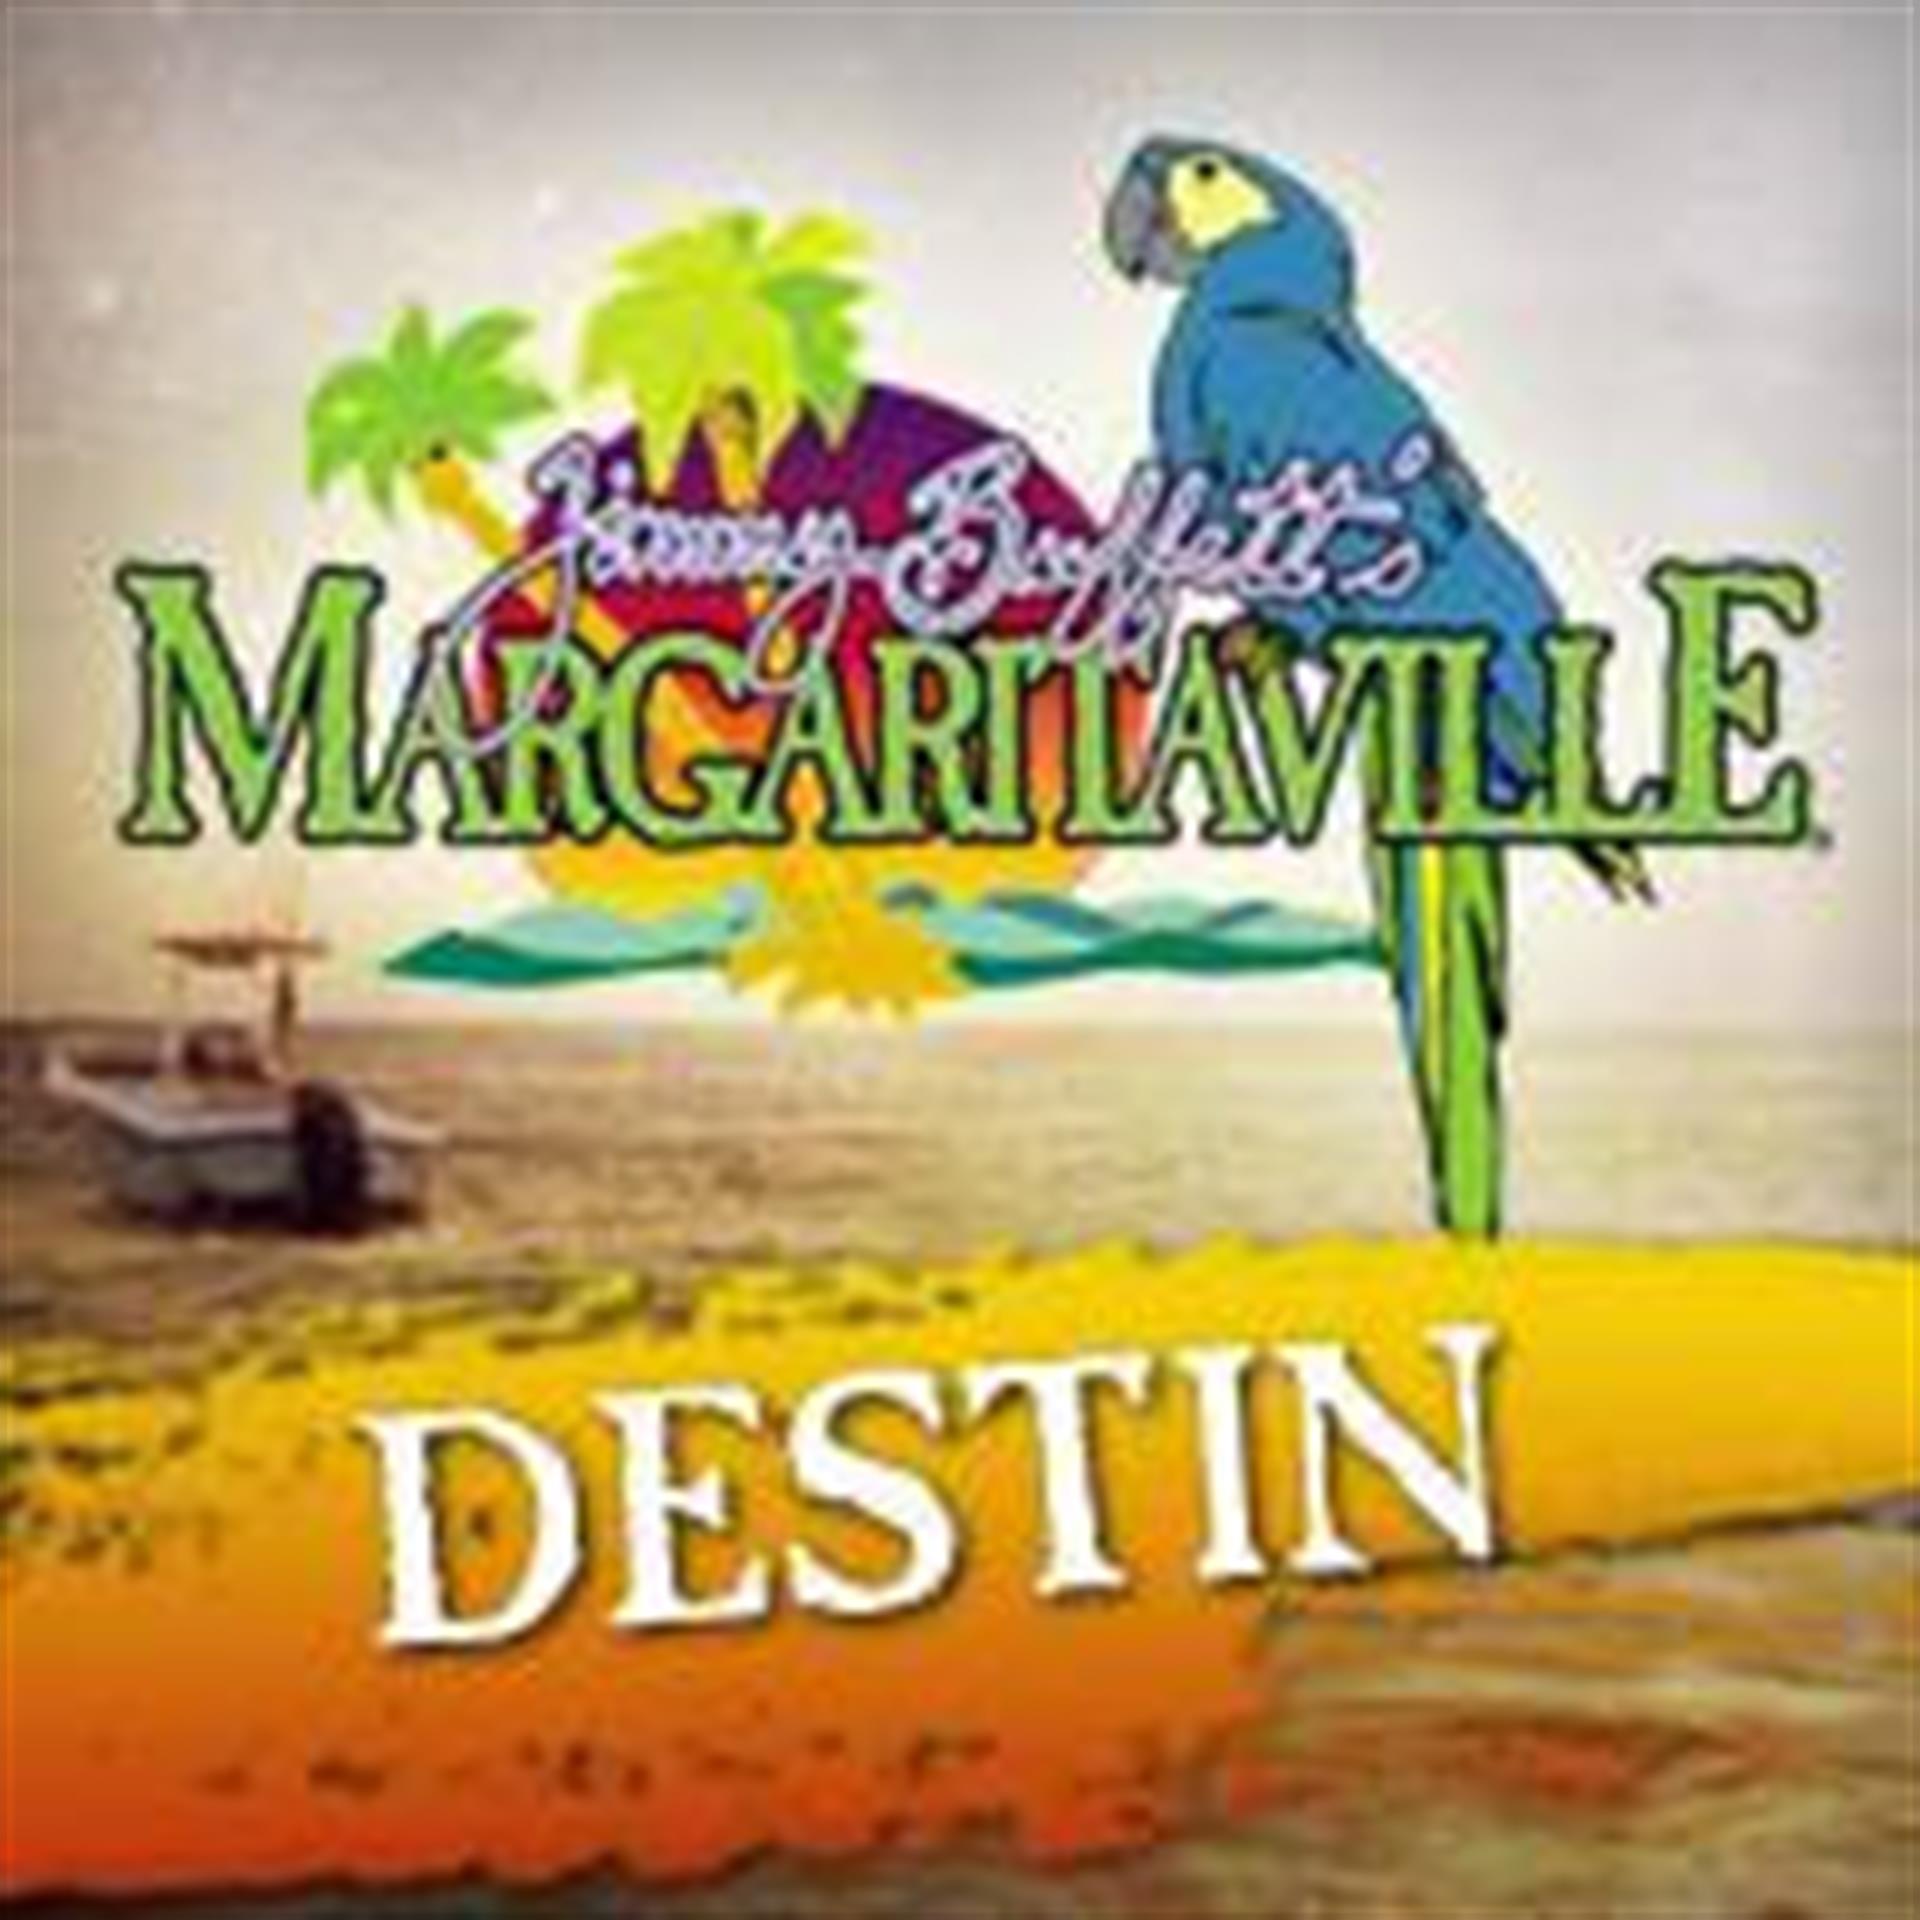 The Destin Harbor Welcomes New Margaritaville Restaurant